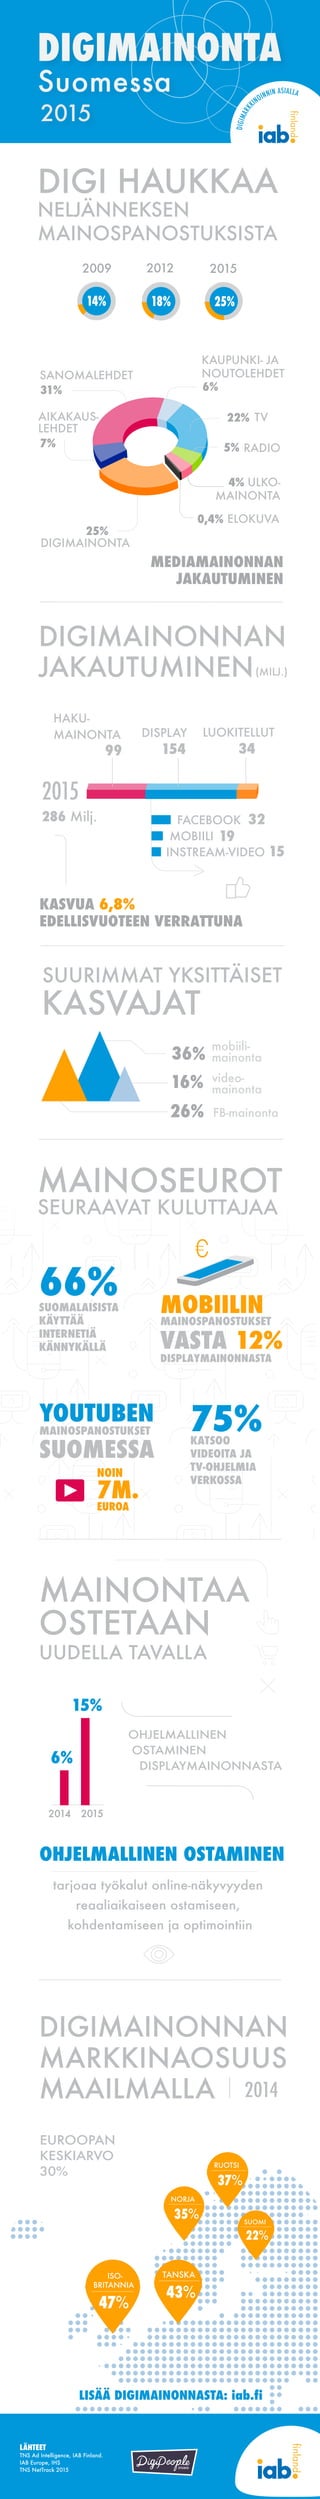 2015
20152014
STUDIO
MEDIAMAINONNAN
JAKAUTUMINEN
MAINOSEUROT
SEURAAVAT KULUTTAJAA
(MILJ.)
286 Milj.
31%
25%
22%
7%
99
32
19
15
154 34
201520122009
14% 18% 25%
6%
5%
4%
0,4%
36%
16%
26%
6%
15%
mobiili-
mainonta
KASVUA 6,8%
EDELLISVUOTEEN VERRATTUNA
FB-mainonta
video-
mainonta
DISPLAY
OHJELMALLINEN
OSTAMINEN
DISPLAYMAINONNASTA
INSTREAM-VIDEO
MOBIILI
LUOKITELLUT
FACEBOOK
HAKU-
MAINONTA
SUURIMMAT YKSITTÄISET
KASVAJAT
DIGIMAINONNAN
JAKAUTUMINEN
DIGIMAINONNAN
MARKKINAOSUUS
MAAILMALLA
47%
ISO-
BRITANNIA
37%
RUOTSI
43%
TANSKA
35%
NORJA
22%
SUOMI
EUROOPAN
KESKIARVO
30%
2014
tarjoaa työkalut online-näkyvyyden
reaaliaikaiseen ostamiseen,
kohdentamiseen ja optimointiin
DIGI HAUKKAA
NELJÄNNEKSEN
MAINOSPANOSTUKSISTA
66%SUOMALAISISTA
KÄYTTÄÄ
INTERNETIÄ
KÄNNYKÄLLÄ
MOBIILIN
MAINOSPANOSTUKSET
VASTA 12%
DISPLAYMAINONNASTA
75%KATSOO
VIDEOITA JA
TV-OHJELMIA
VERKOSSA
LÄHTEET
TNS Ad Intelligence, IAB Finland.
IAB Europe, IHS
TNS NetTrack 2015
YOUTUBEN
MAINOSPANOSTUKSET
SUOMESSA
NOIN
7M.
EUROA
AIKAKAUS-
LEHDET
RADIO
SANOMALEHDET
DIGIMAINONTA
ULKO-
MAINONTA
TV
KAUPUNKI- JA
NOUTOLEHDET
ELOKUVA
OHJELMALLINEN OSTAMINEN
LISÄÄ DIGIMAINONNASTA: iab.fi
MAINONTAA
OSTETAAN
UUDELLA TAVALLA
DIGIMARKK
INOINNIN ASIALLA
DIGIMAINONTA
Suomessa
2015
 